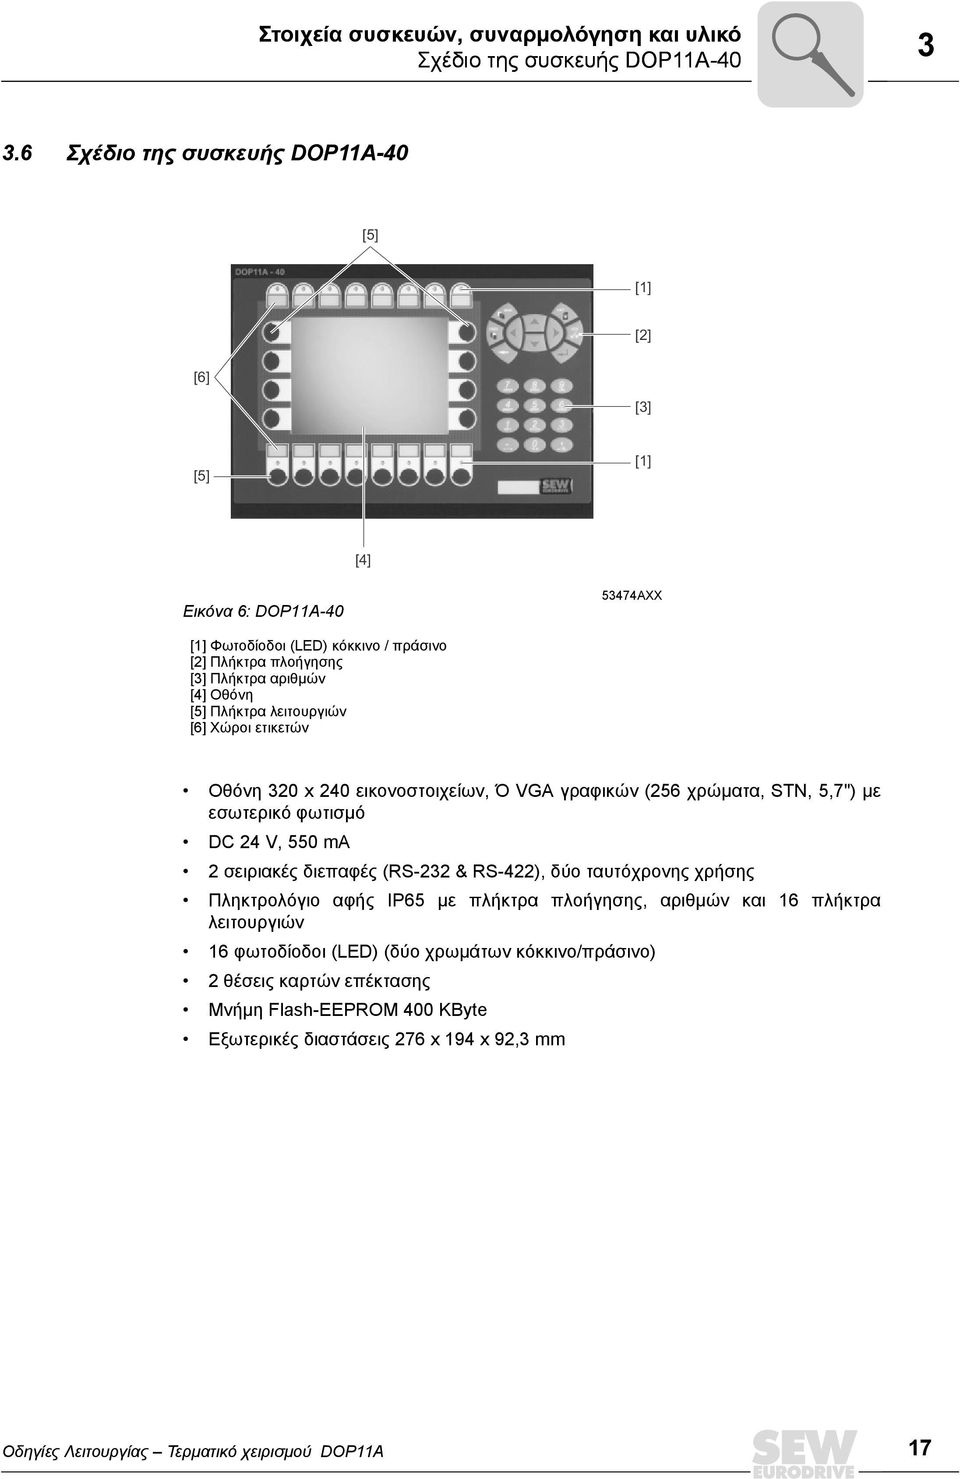 Πλήκτρα λειτουργιών [6] Χώροι ετικετών Οθόνη 320 x 240 εικονοστοιχείων, Ό VGA γραφικών (256 χρώµατα, STN, 5,7") µε εσωτερικό φωτισµό DC 24 V, 550 ma 2 σειριακές διεπαφές (RS-232 & RS-422),